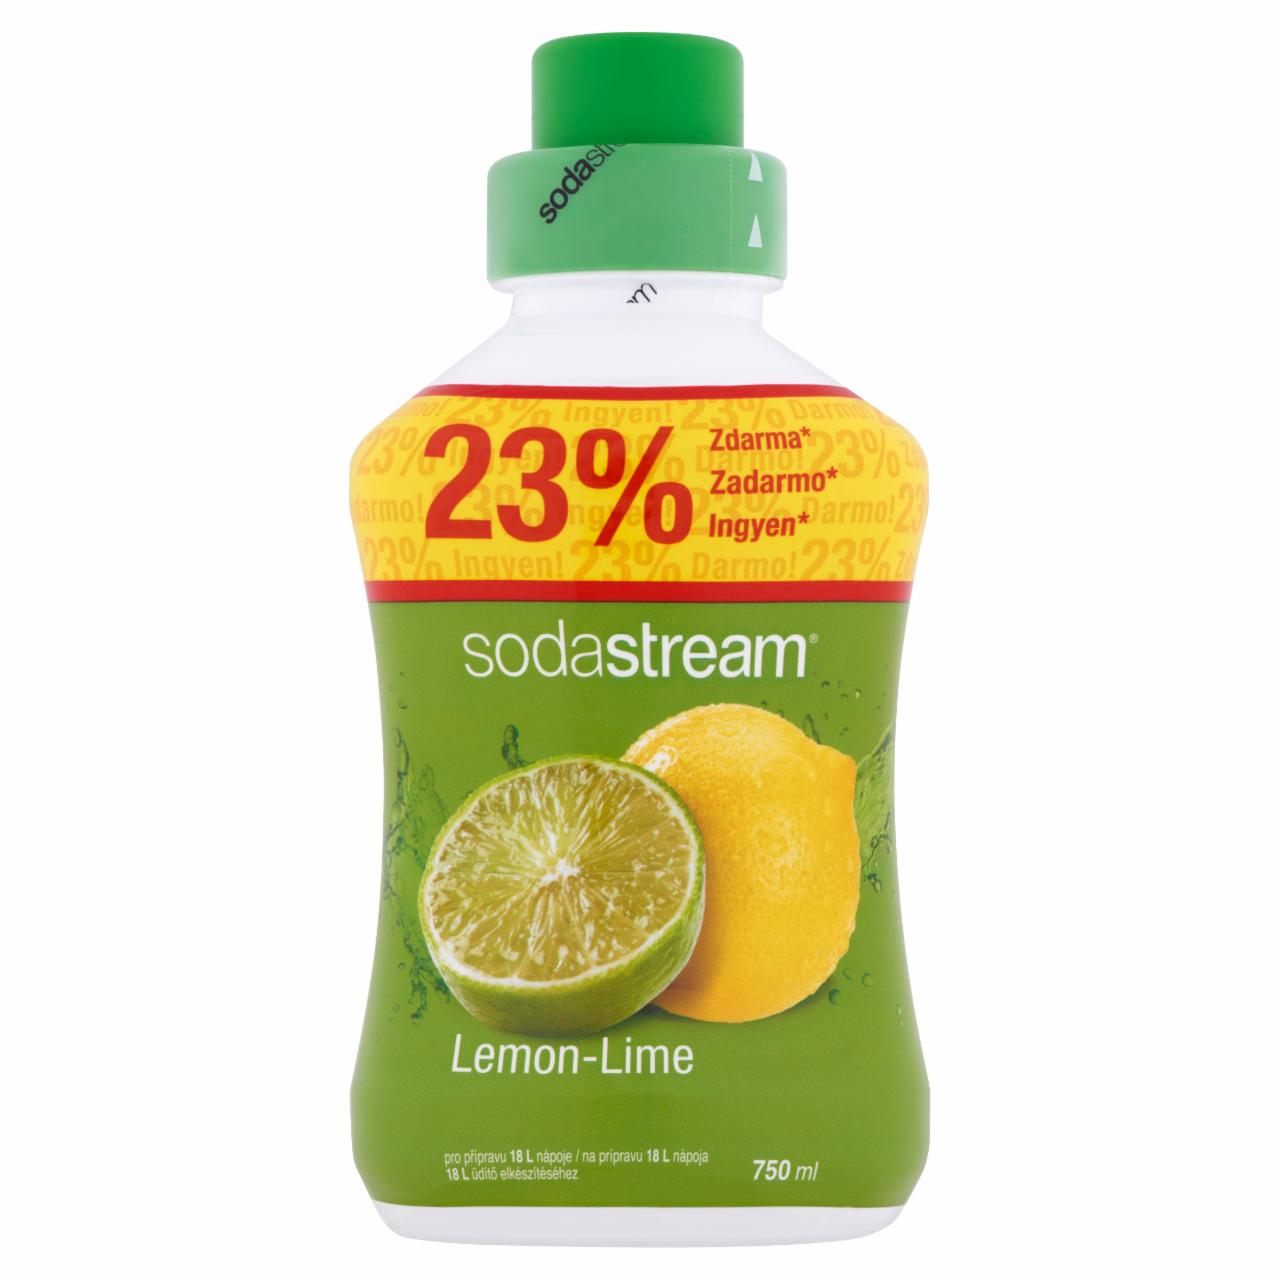 Képek - Sodastream citrom-lime ízű szörp cukorral és édesítőszerrel 750 ml